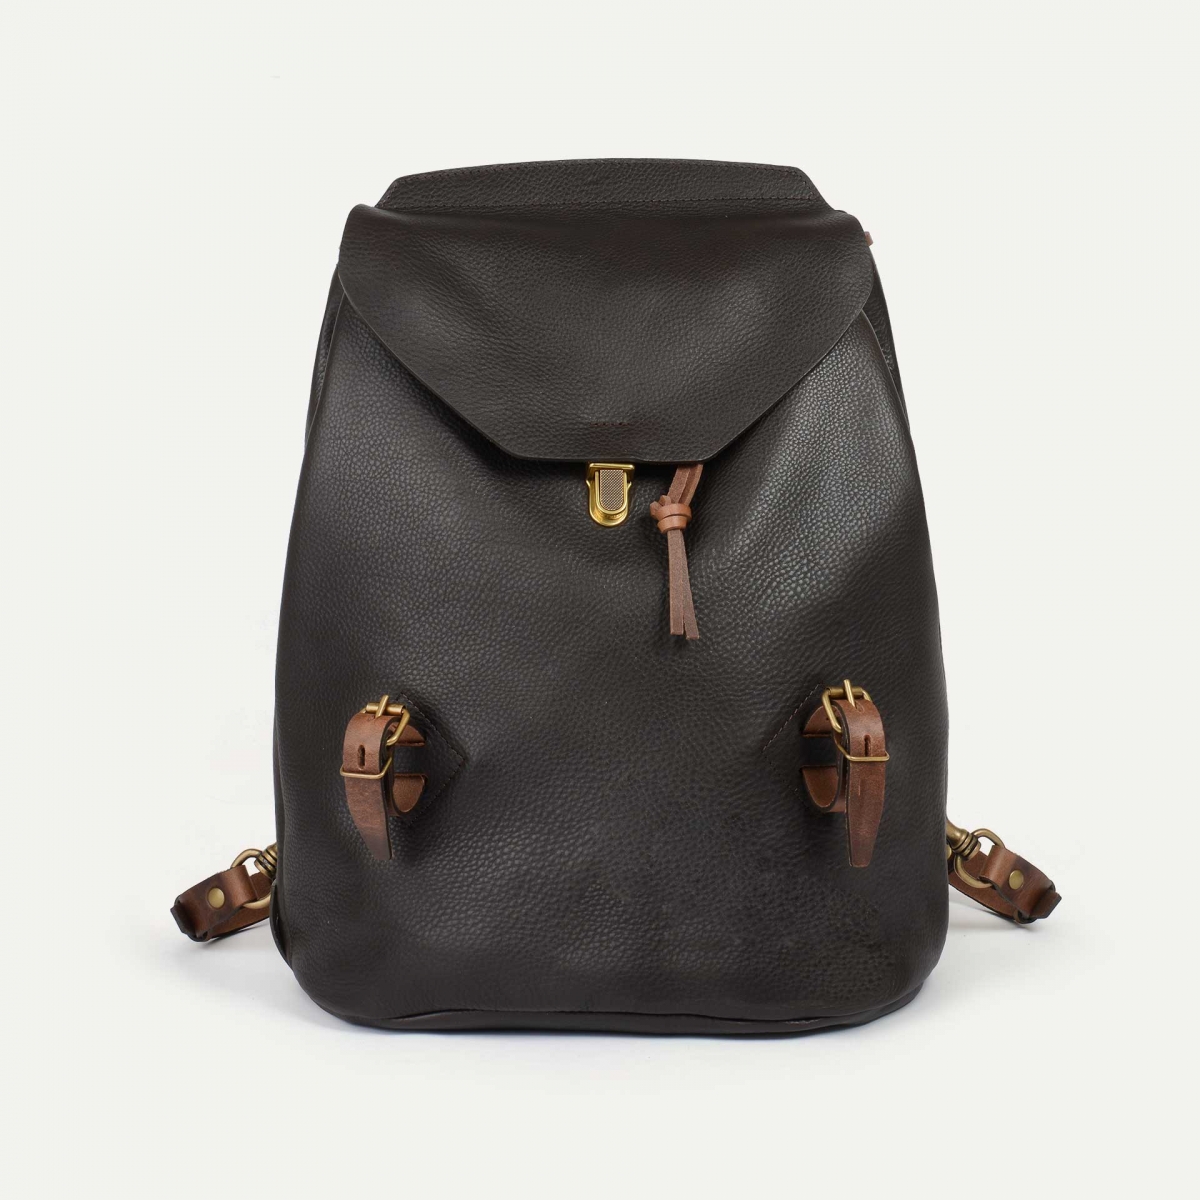 Bag, document holder, Backpack, Travel bag, laptop case, Louis